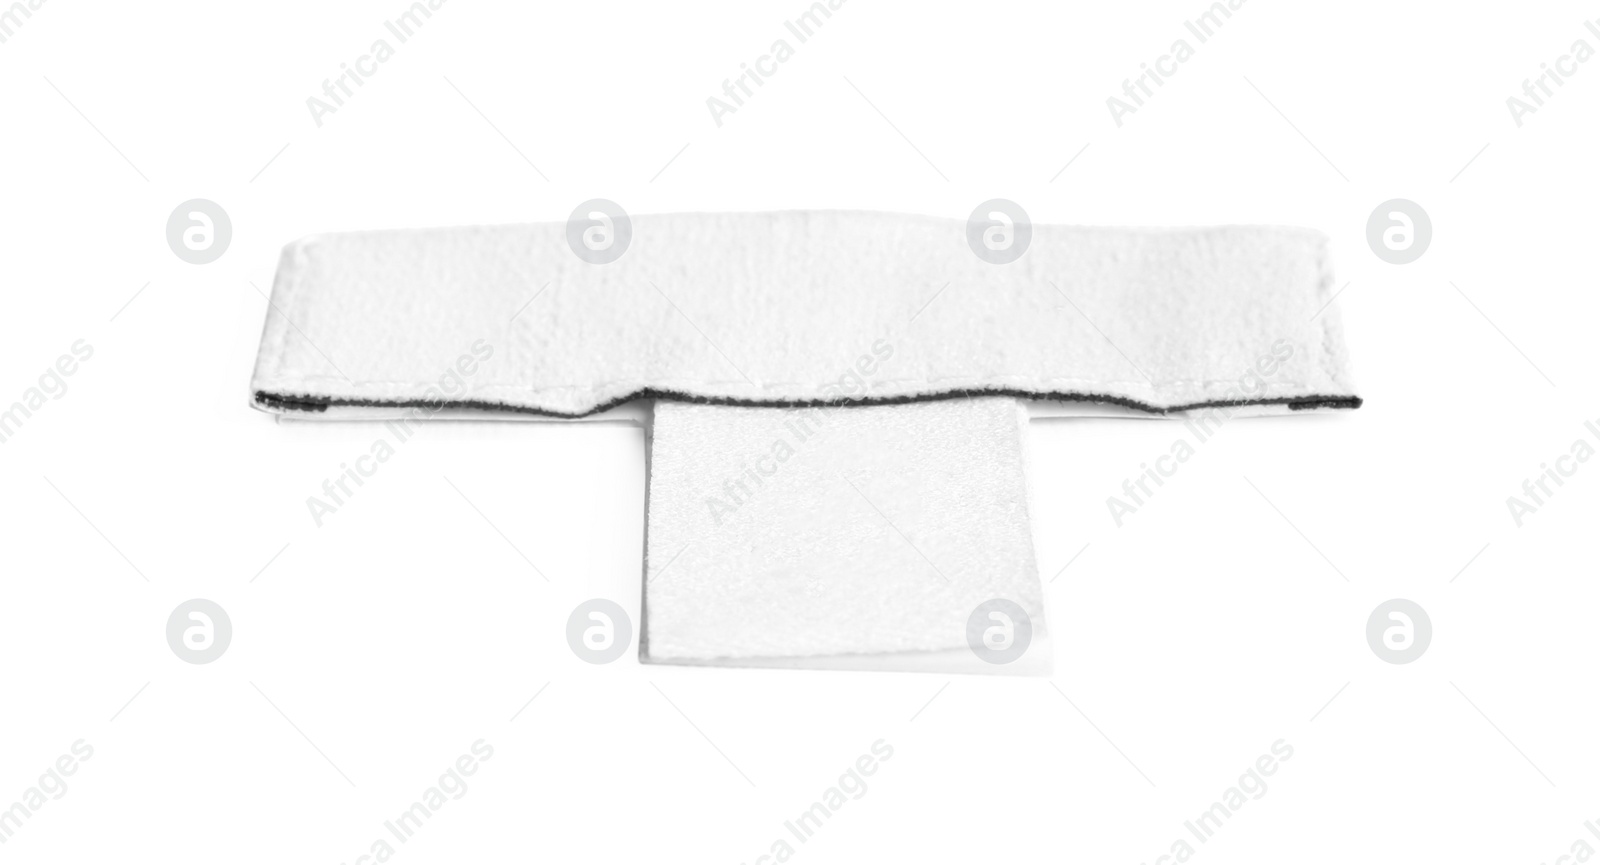 Photo of Blank stylish clothing label isolated on white